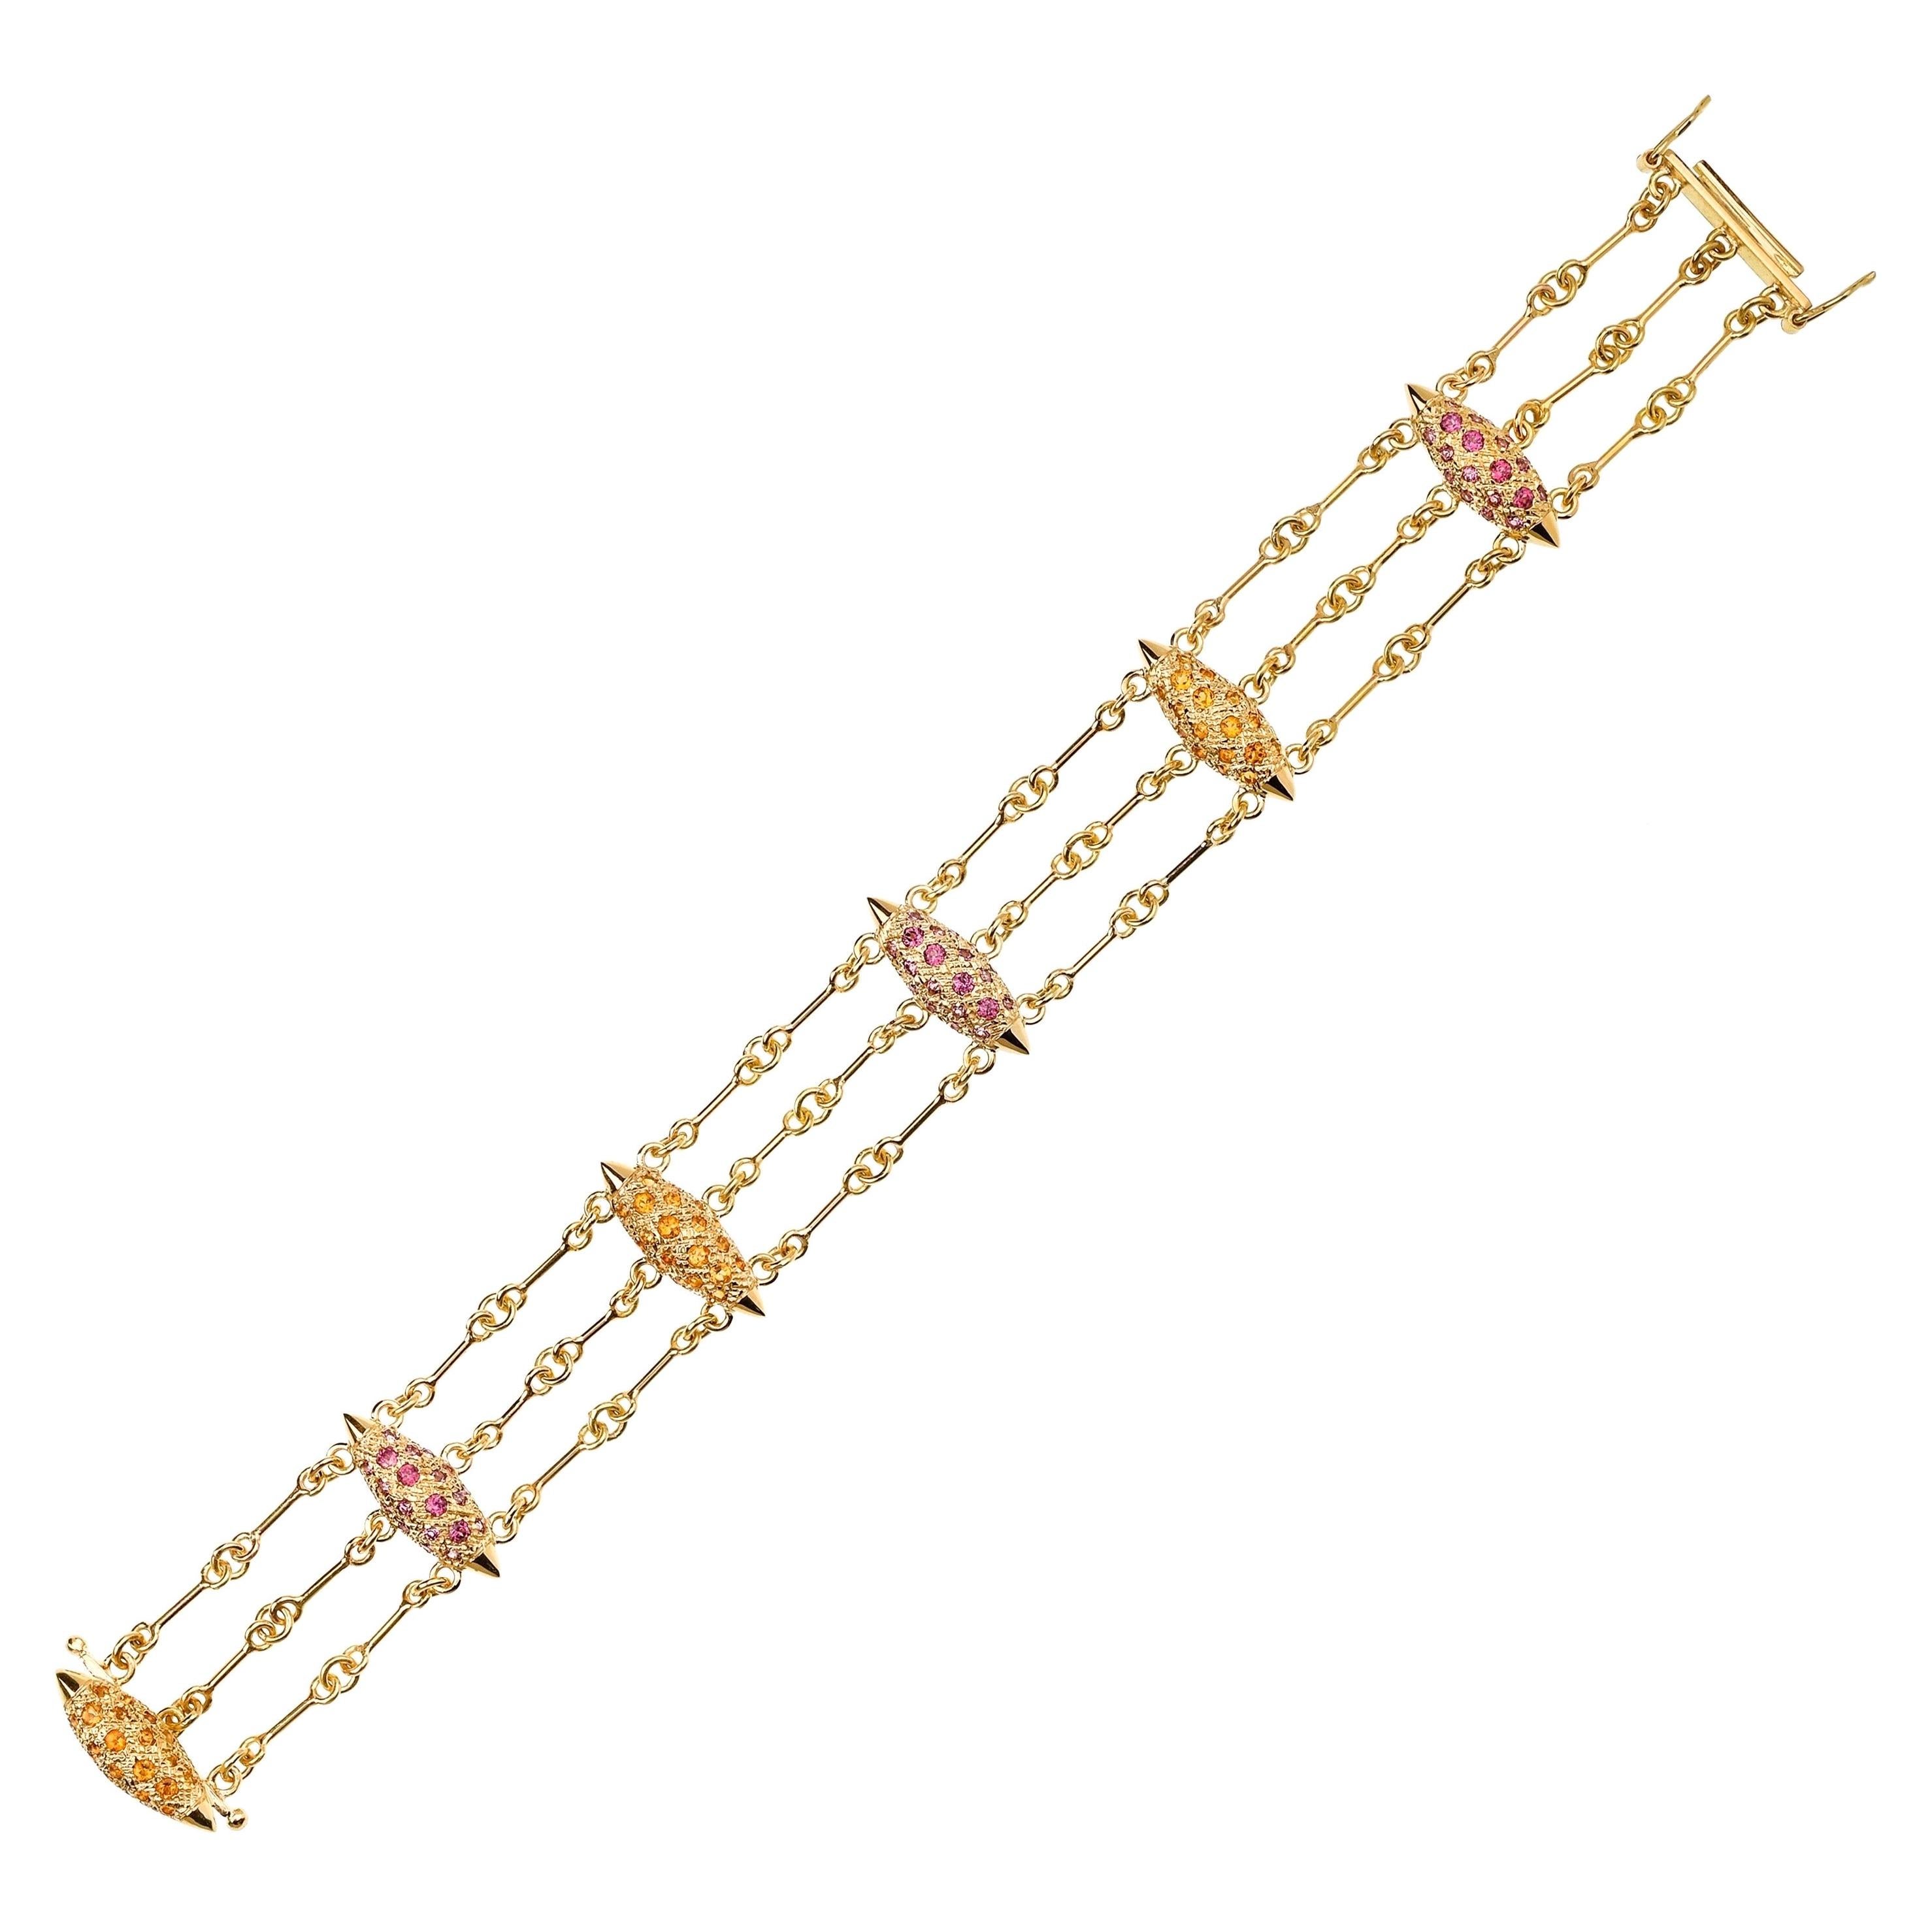 Zeitgenössisches Armband aus 18 Karat Gelbgold mit rosa Granat und Citrin, dreifache Kette